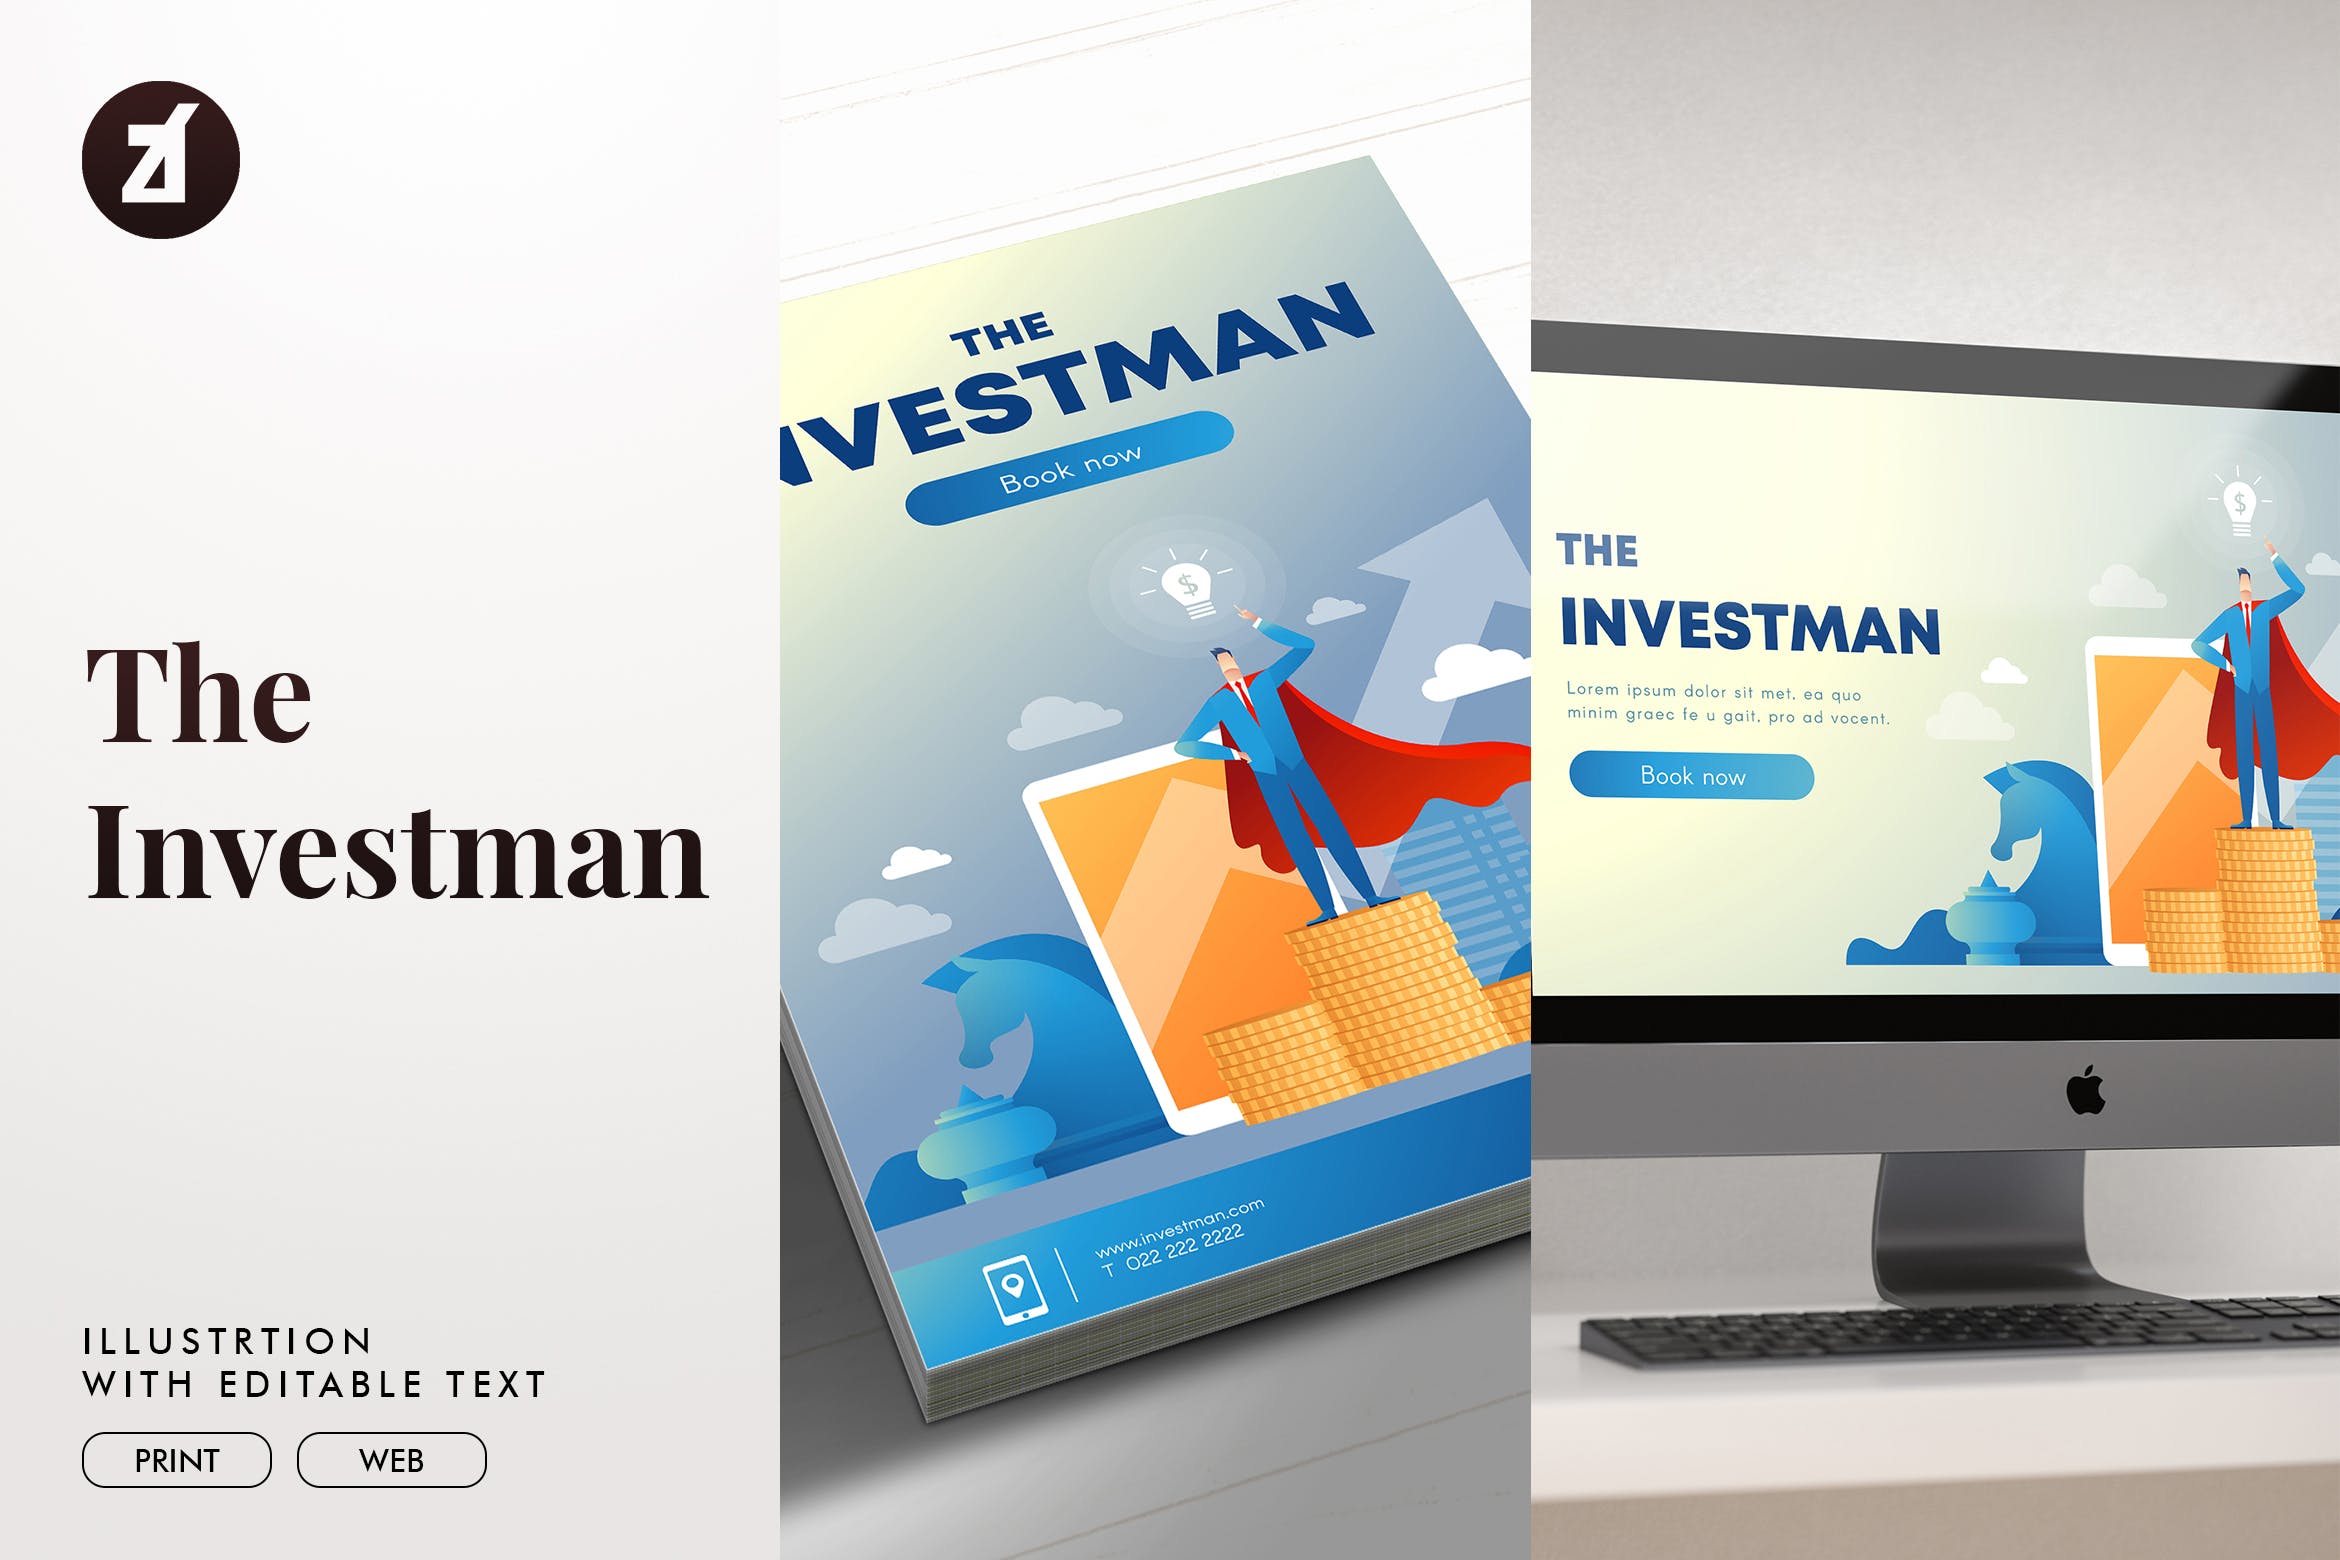 投资者主题矢量大洋岛精选概念插画素材 The investman illustration with text layout插图